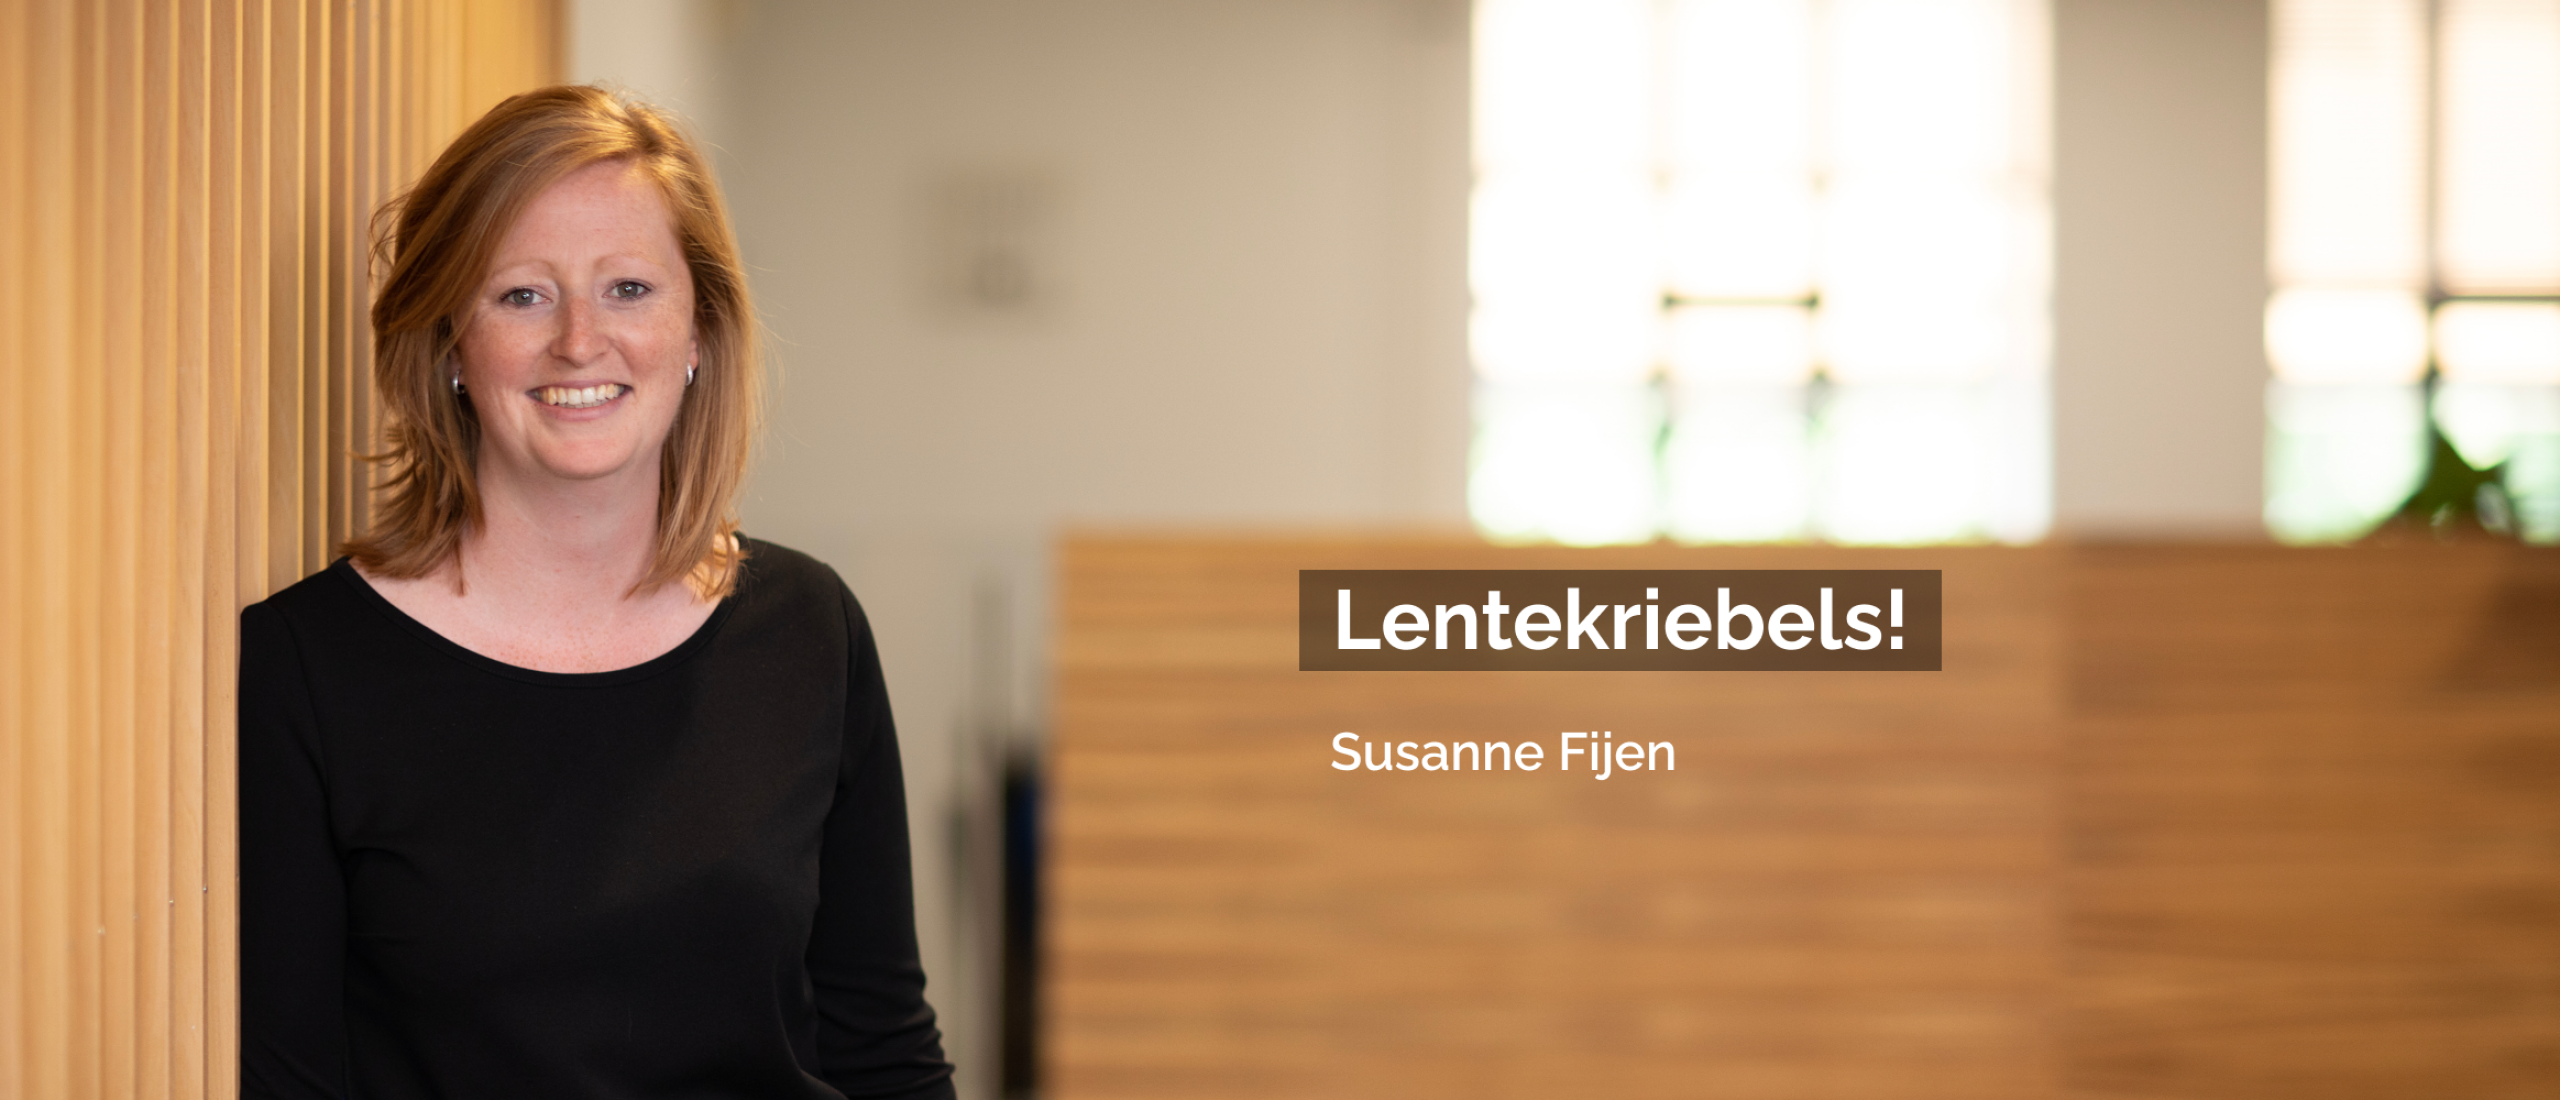 Blog Susanne Fijen | Lentekriebels!